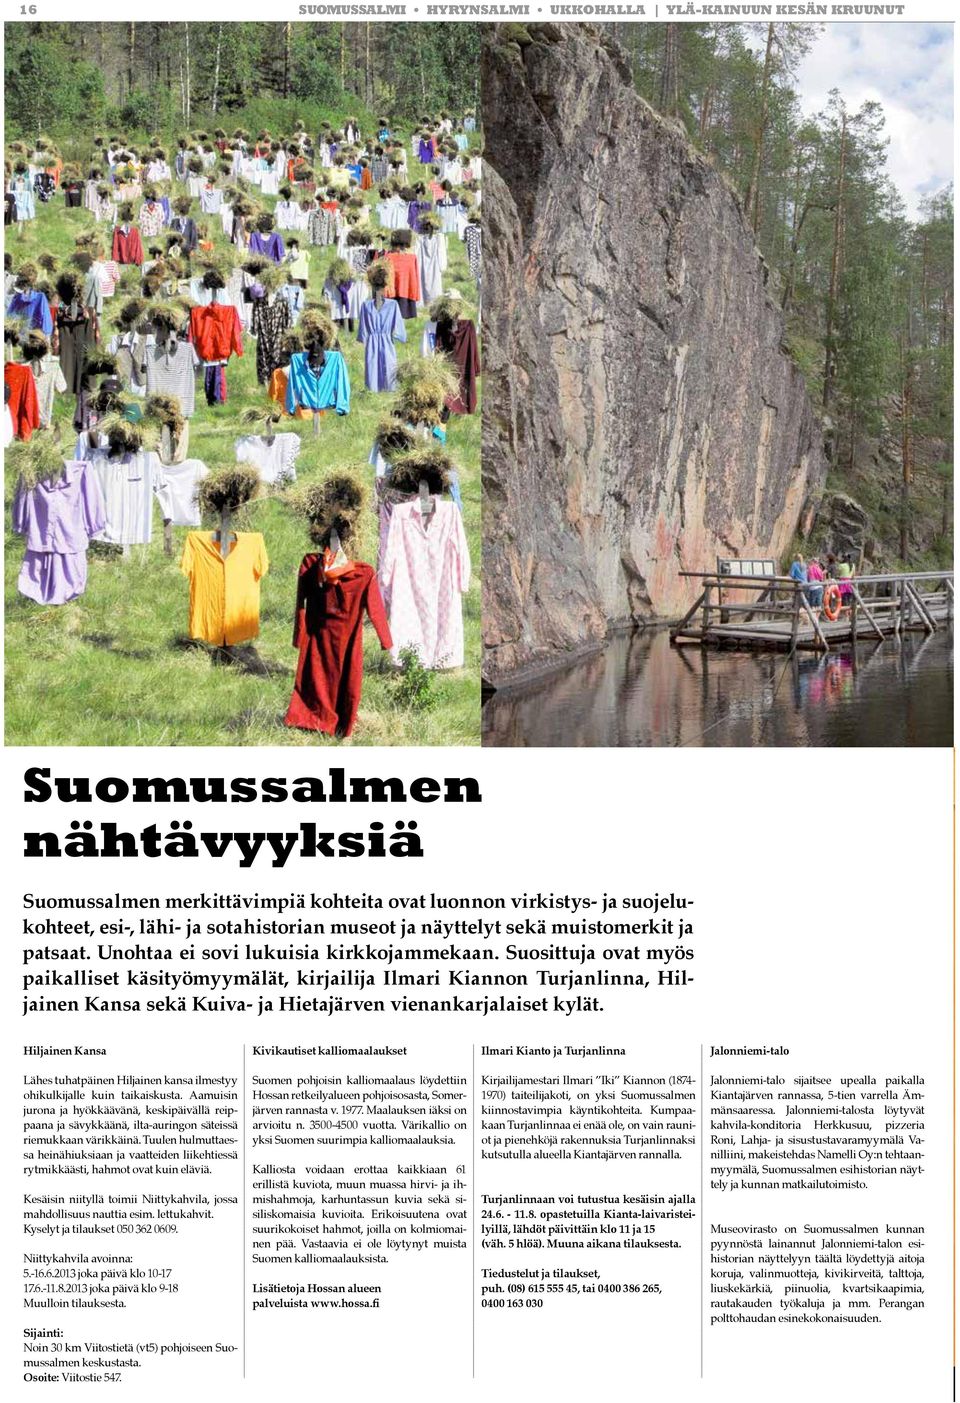 Suosittuja ovat myös paikalliset käsityömyymälät, kirjailija Ilmari Kiannon Turjanlinna, Hiljainen Kansa sekä Kuiva- ja Hietajärven vienankarjalaiset kylät.